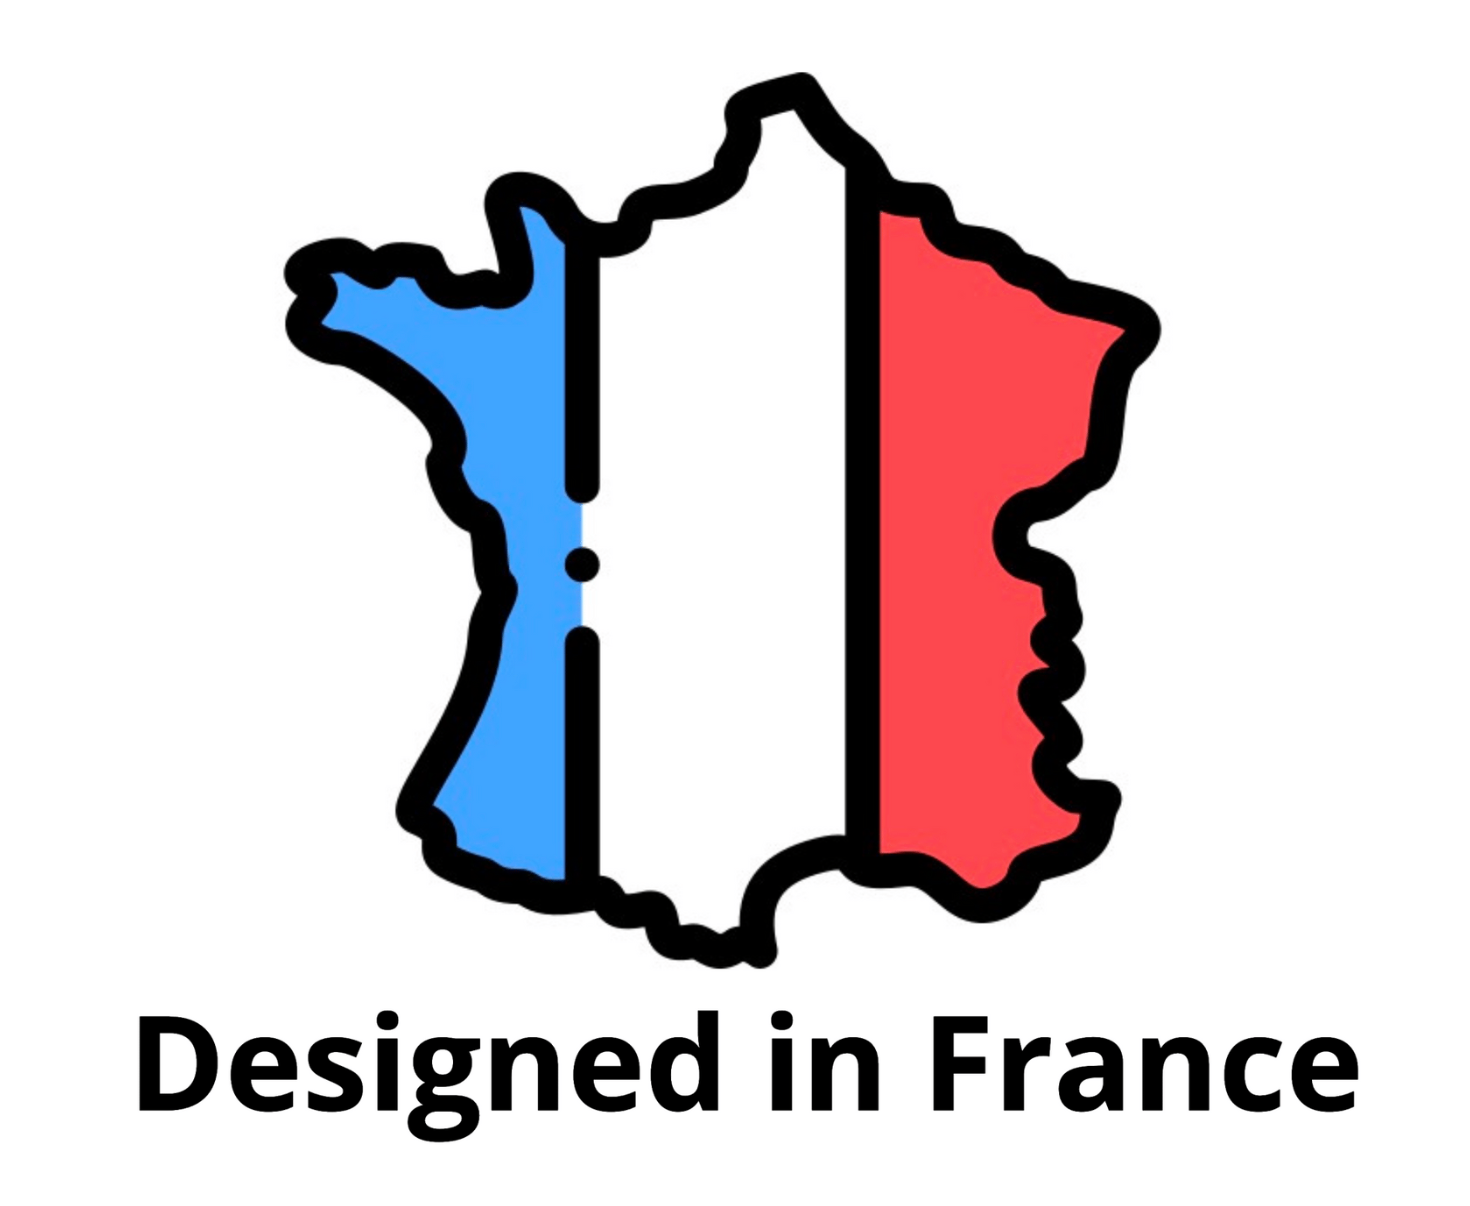 Designed in France